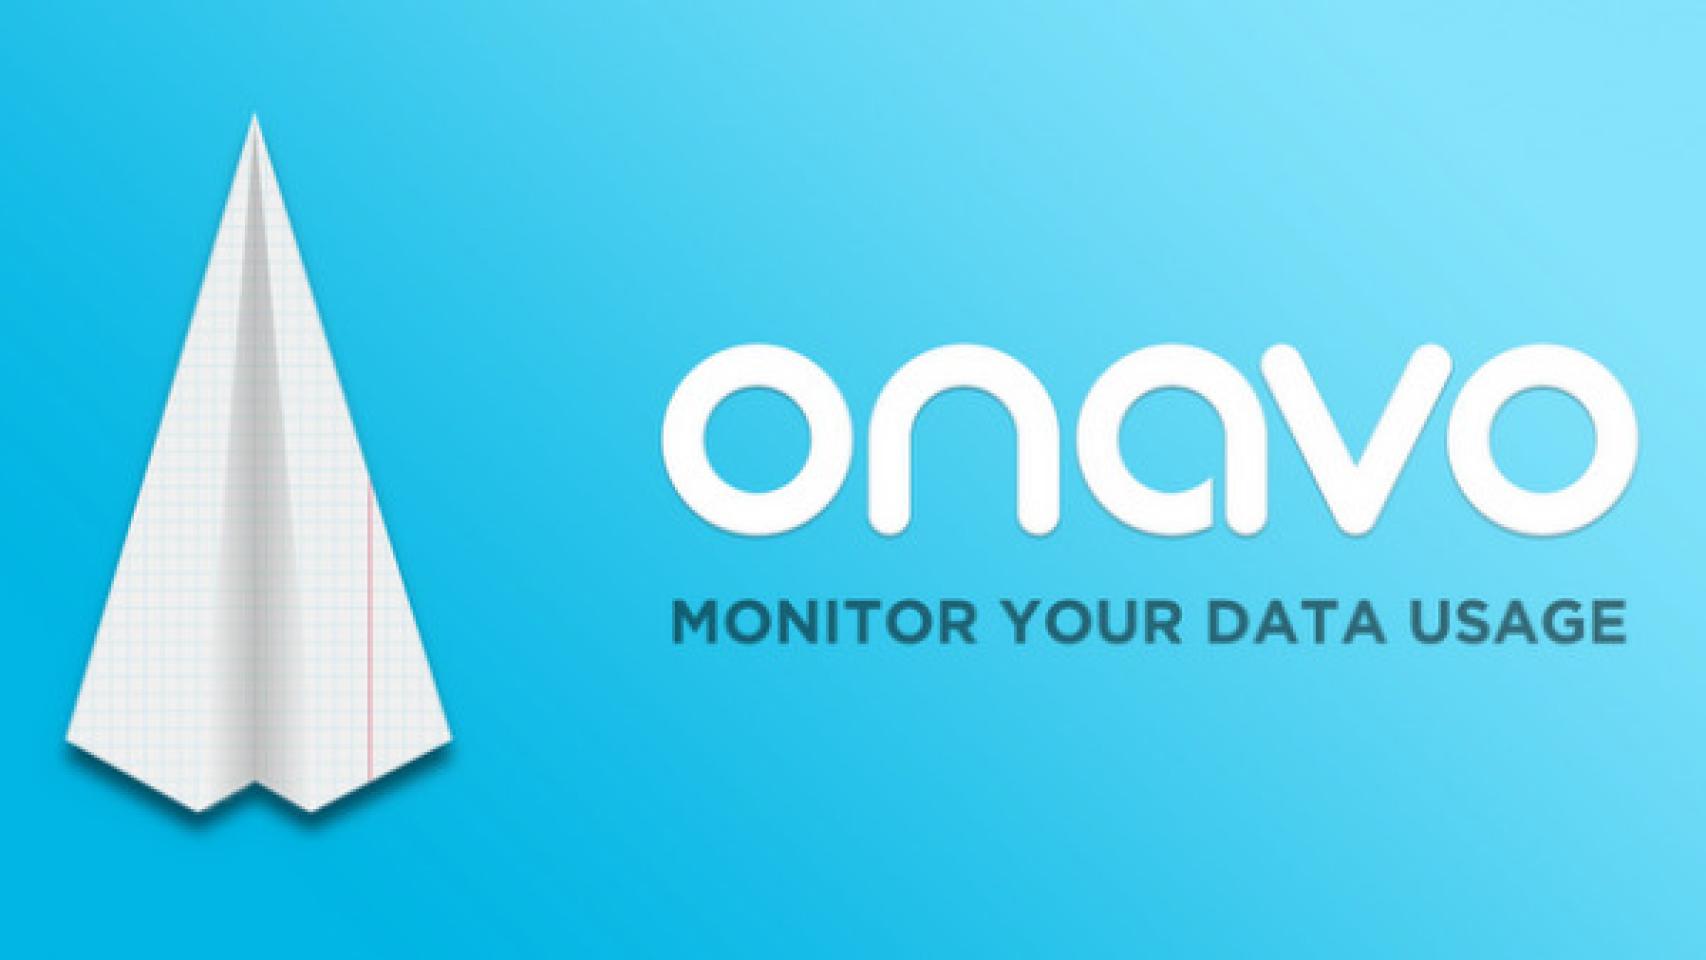 Notificaciones en tiempo real sobre tu consumo de datos con los nuevos widgets de Onavo